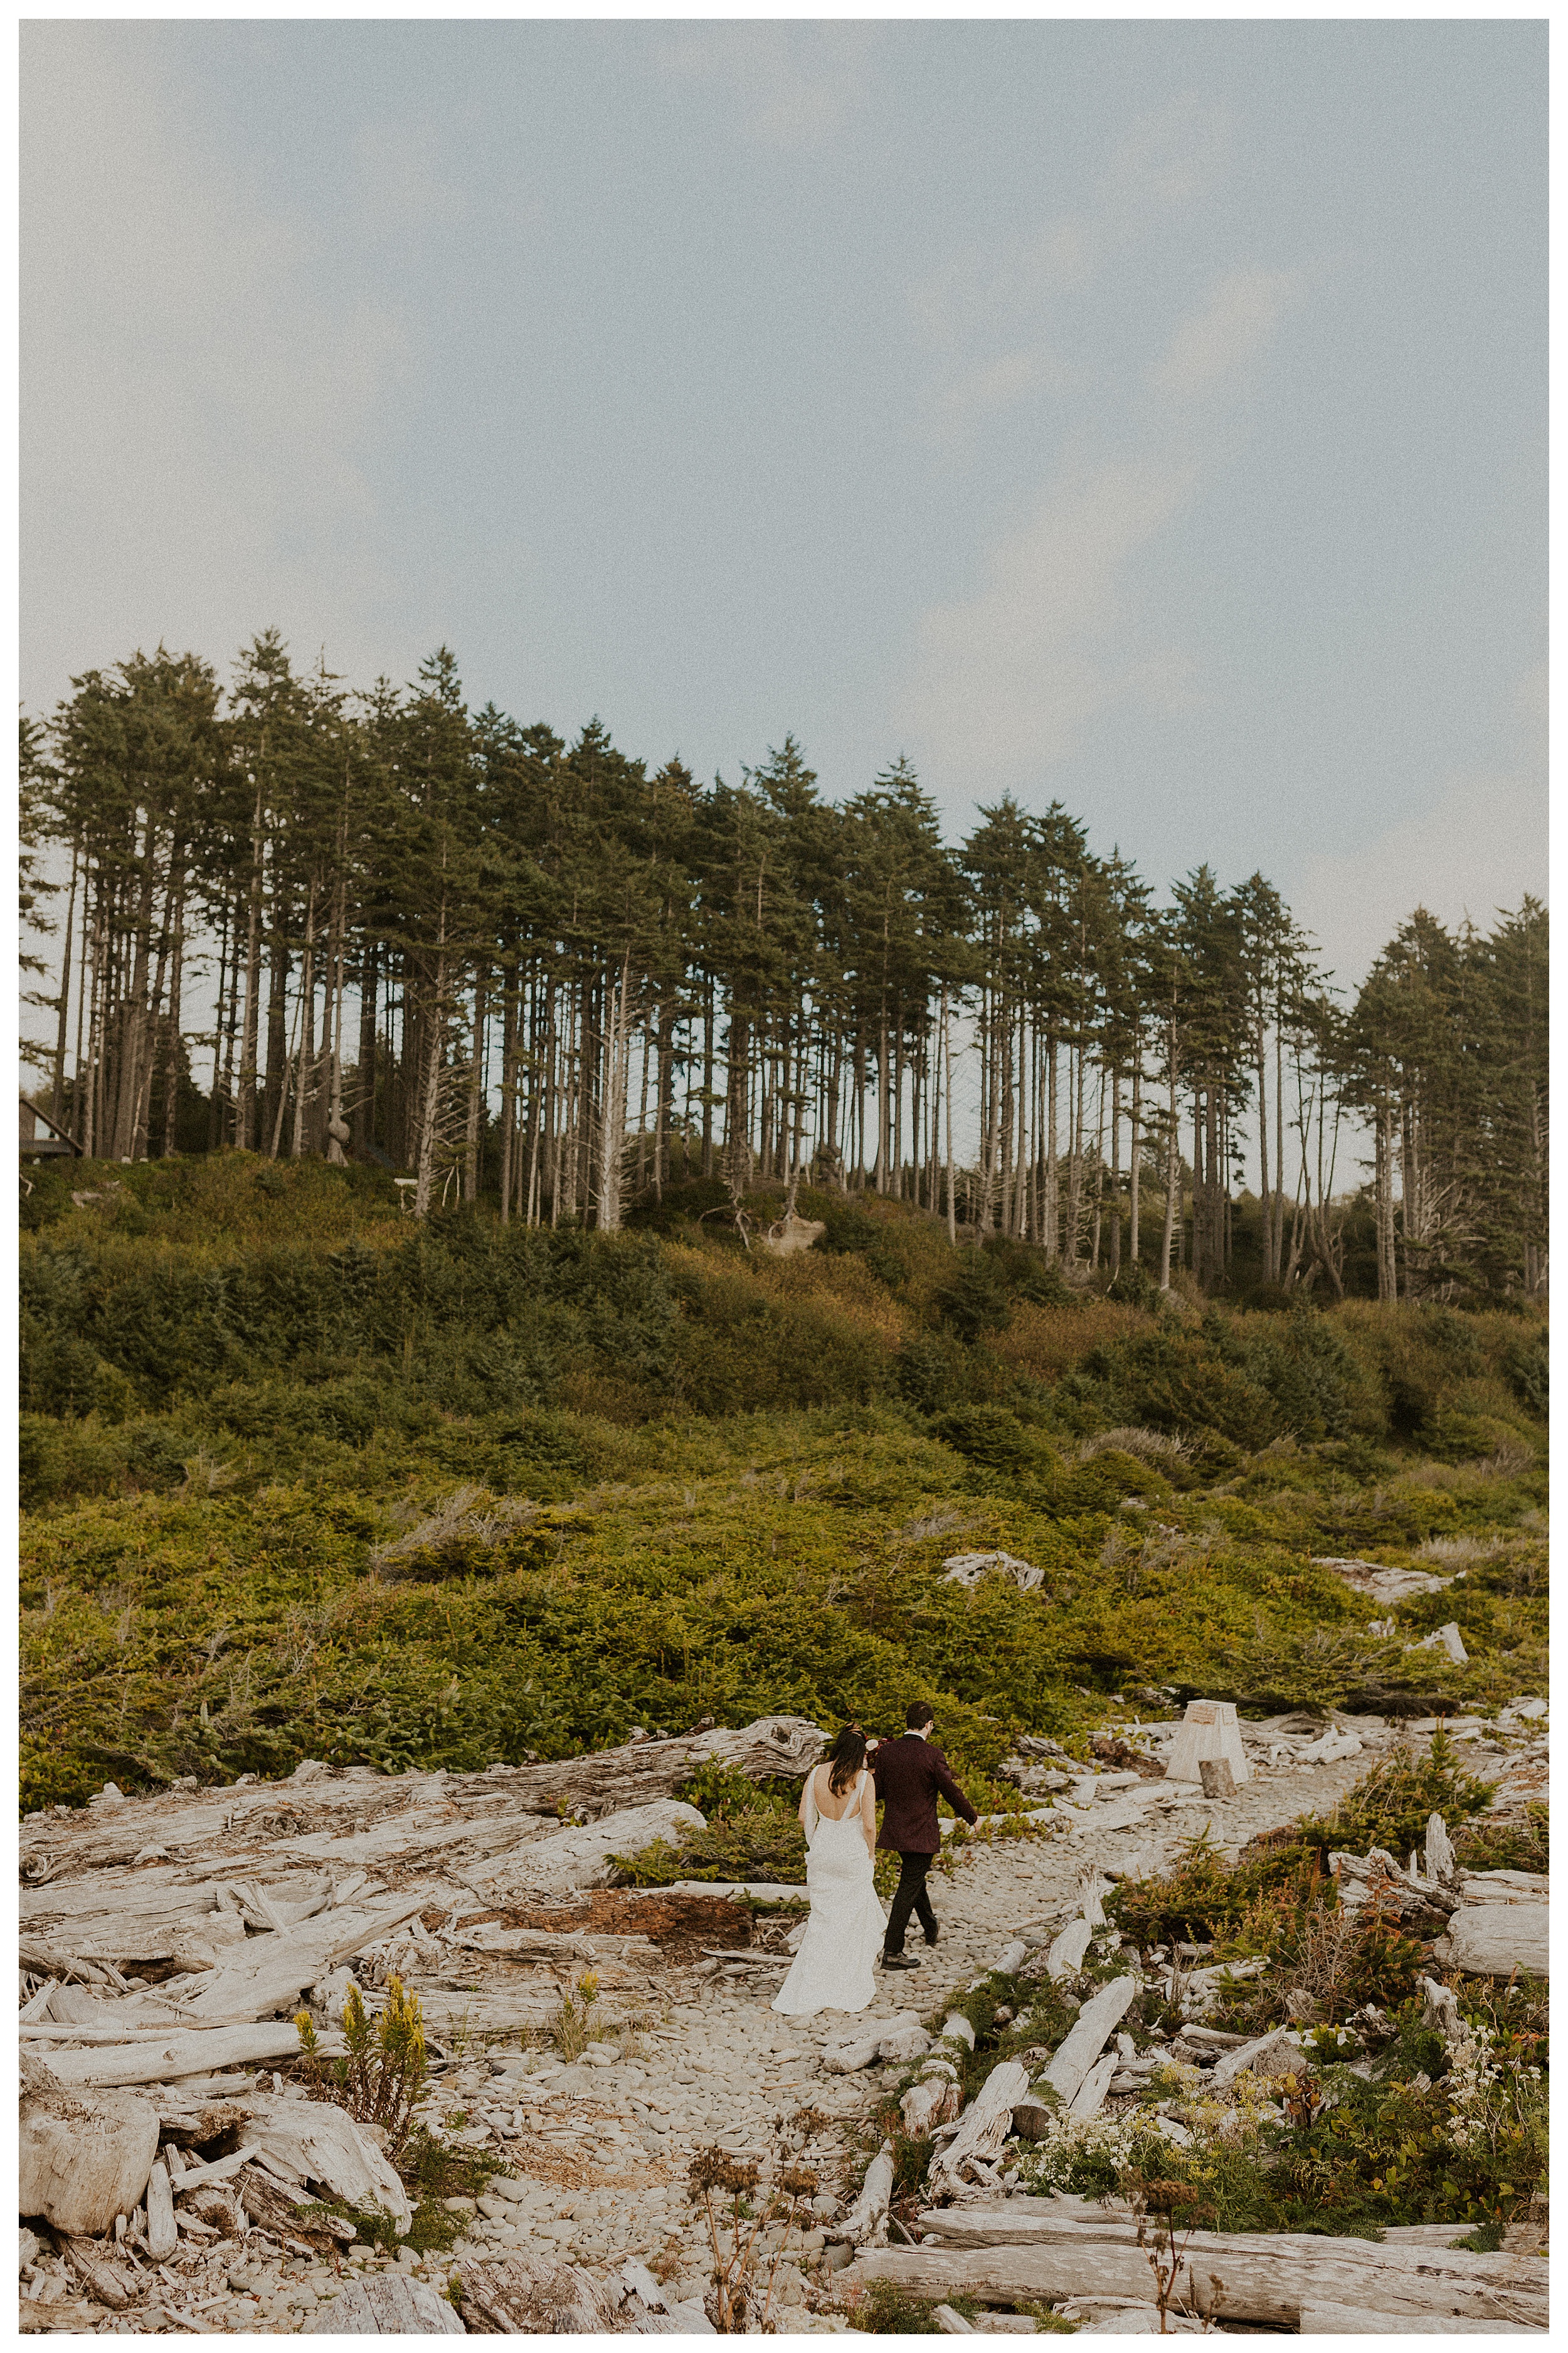 bride and groom walking together olympic national park forest landscape

